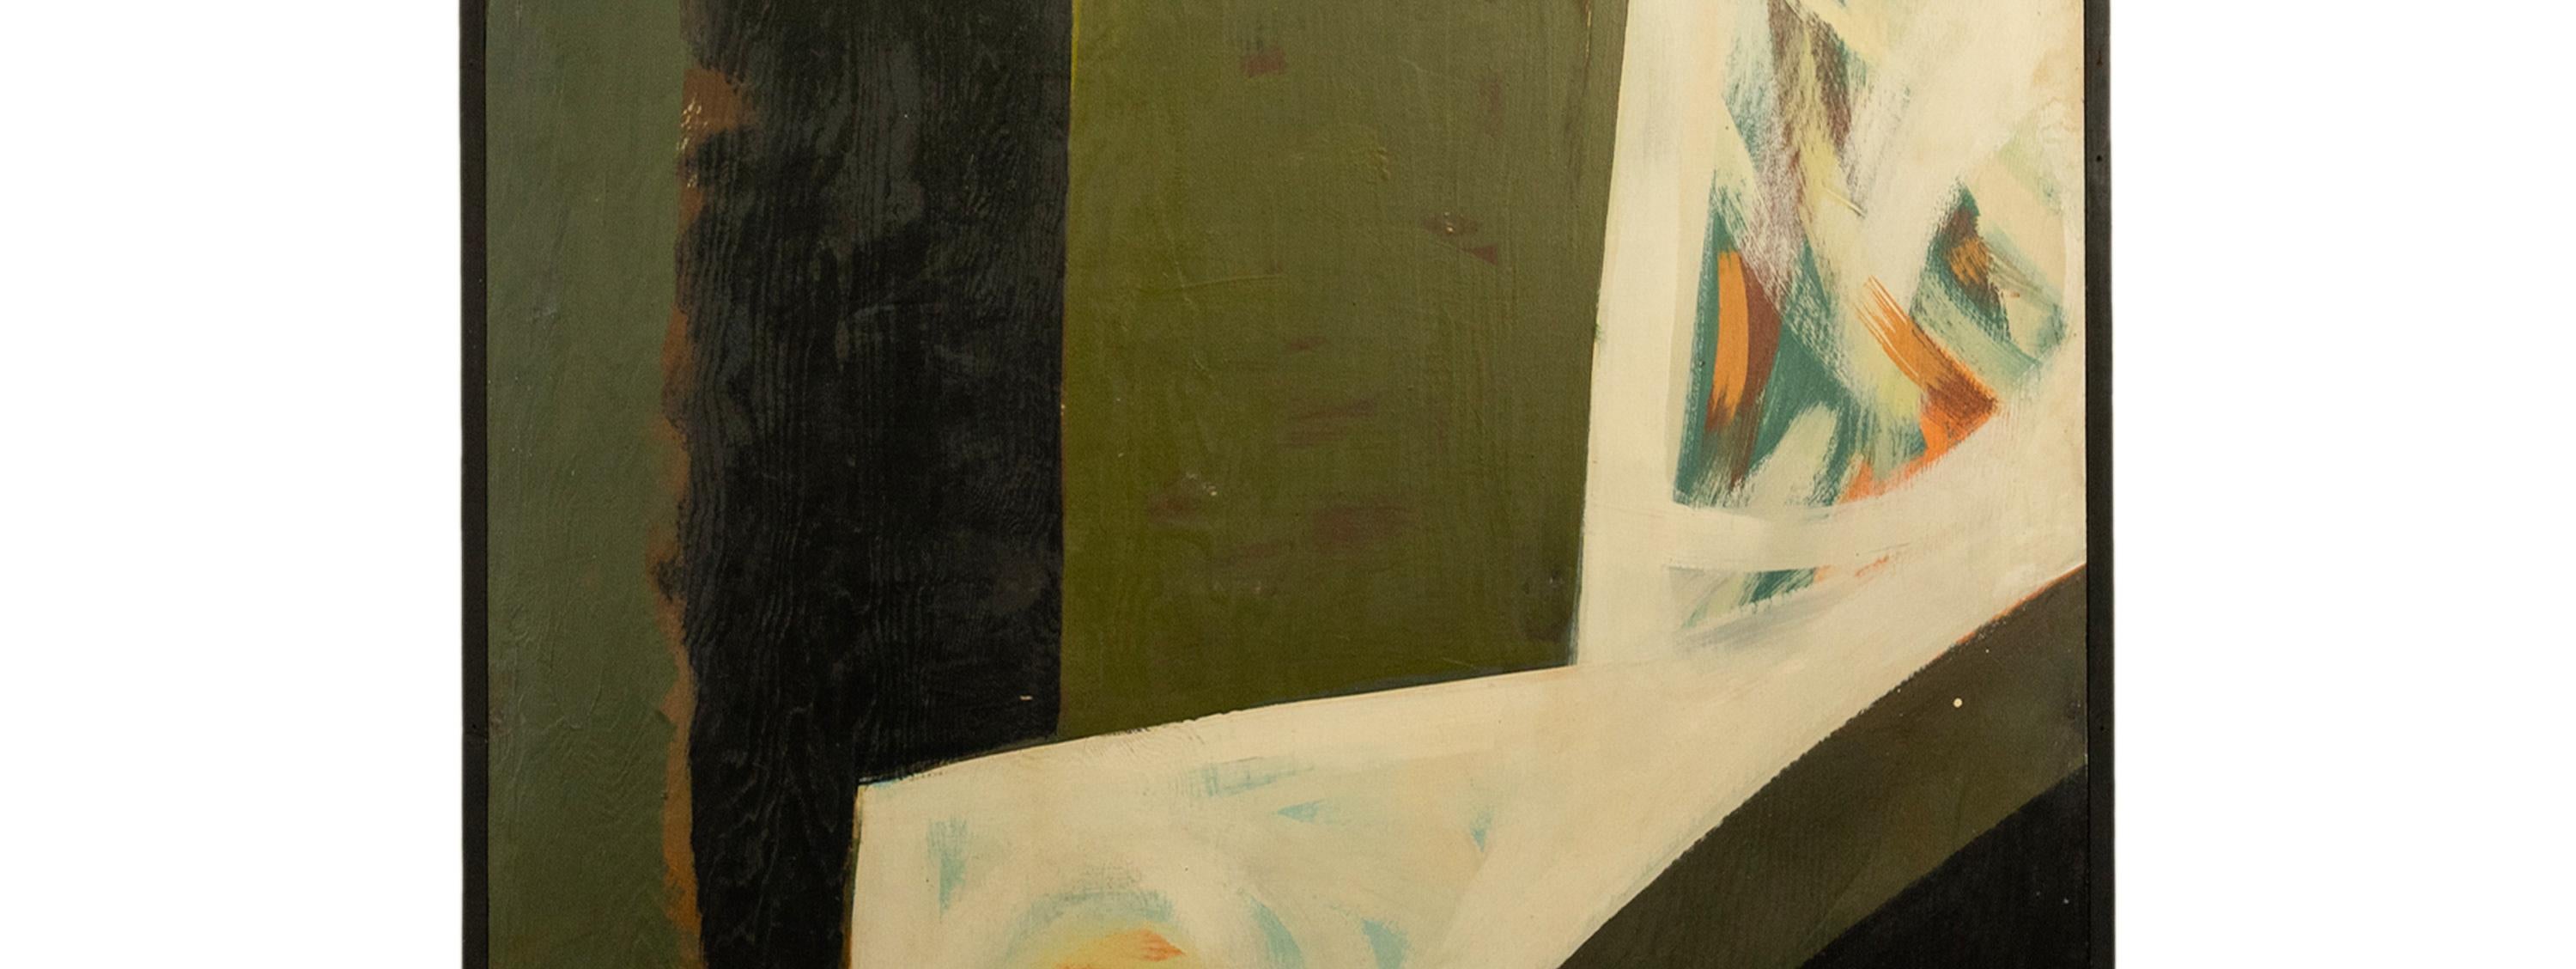 Monumentales modernistisches Öl-auf-Tafel-Gemälde von Louis Demott Bunce (1907-1983), aus einer Installation für die Oregon Centennial Exposition, 1959.
Ein seltenes, wichtiges und monumentales abstraktes Gemälde des berühmten Künstlers Louis Bunce